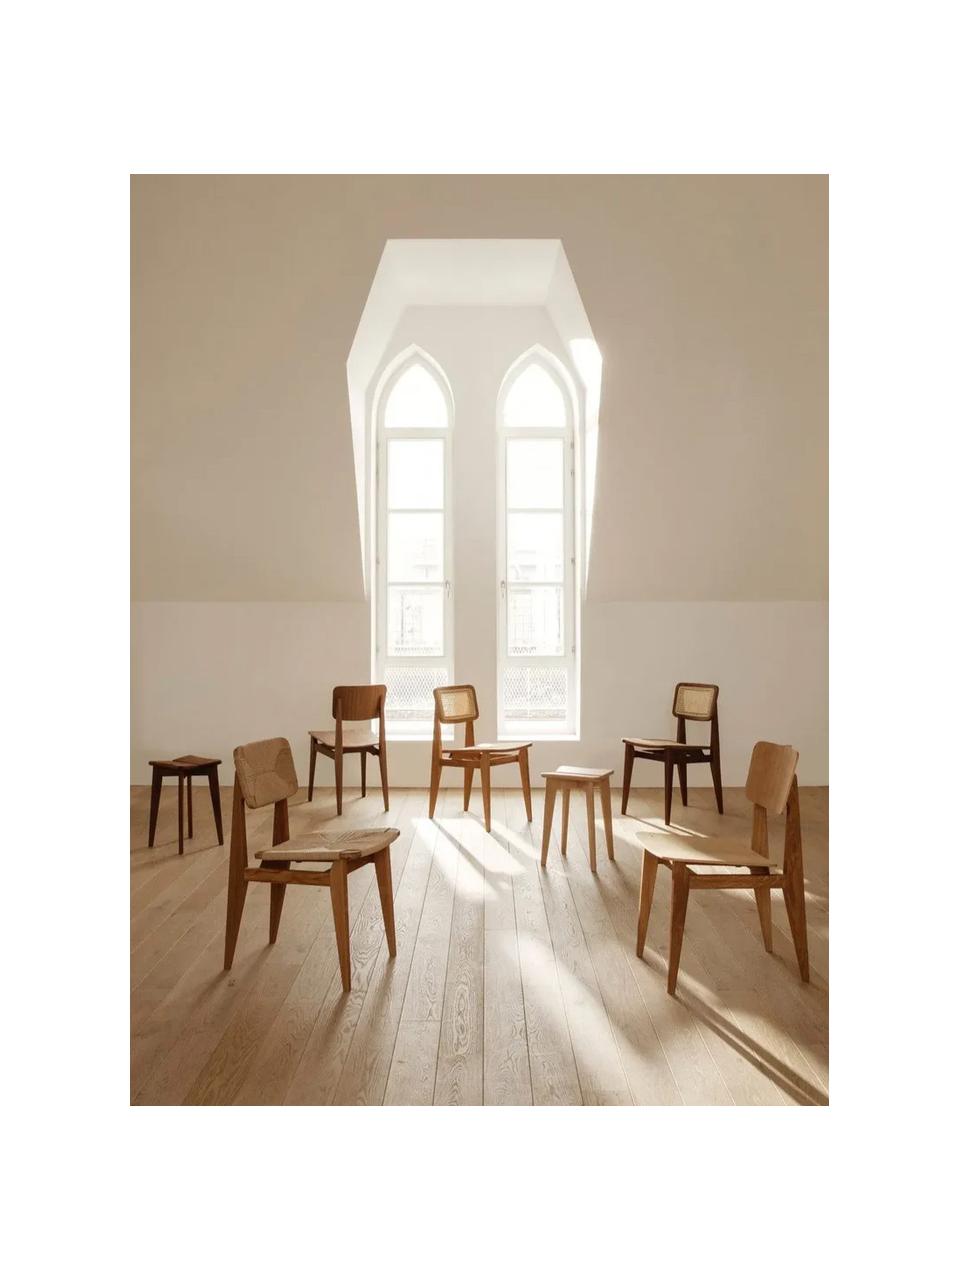 Sedia in legno di quercia C-Chair, Legno di quercia, Legno di quercia, Larg. 41 x Prof. 53 cm